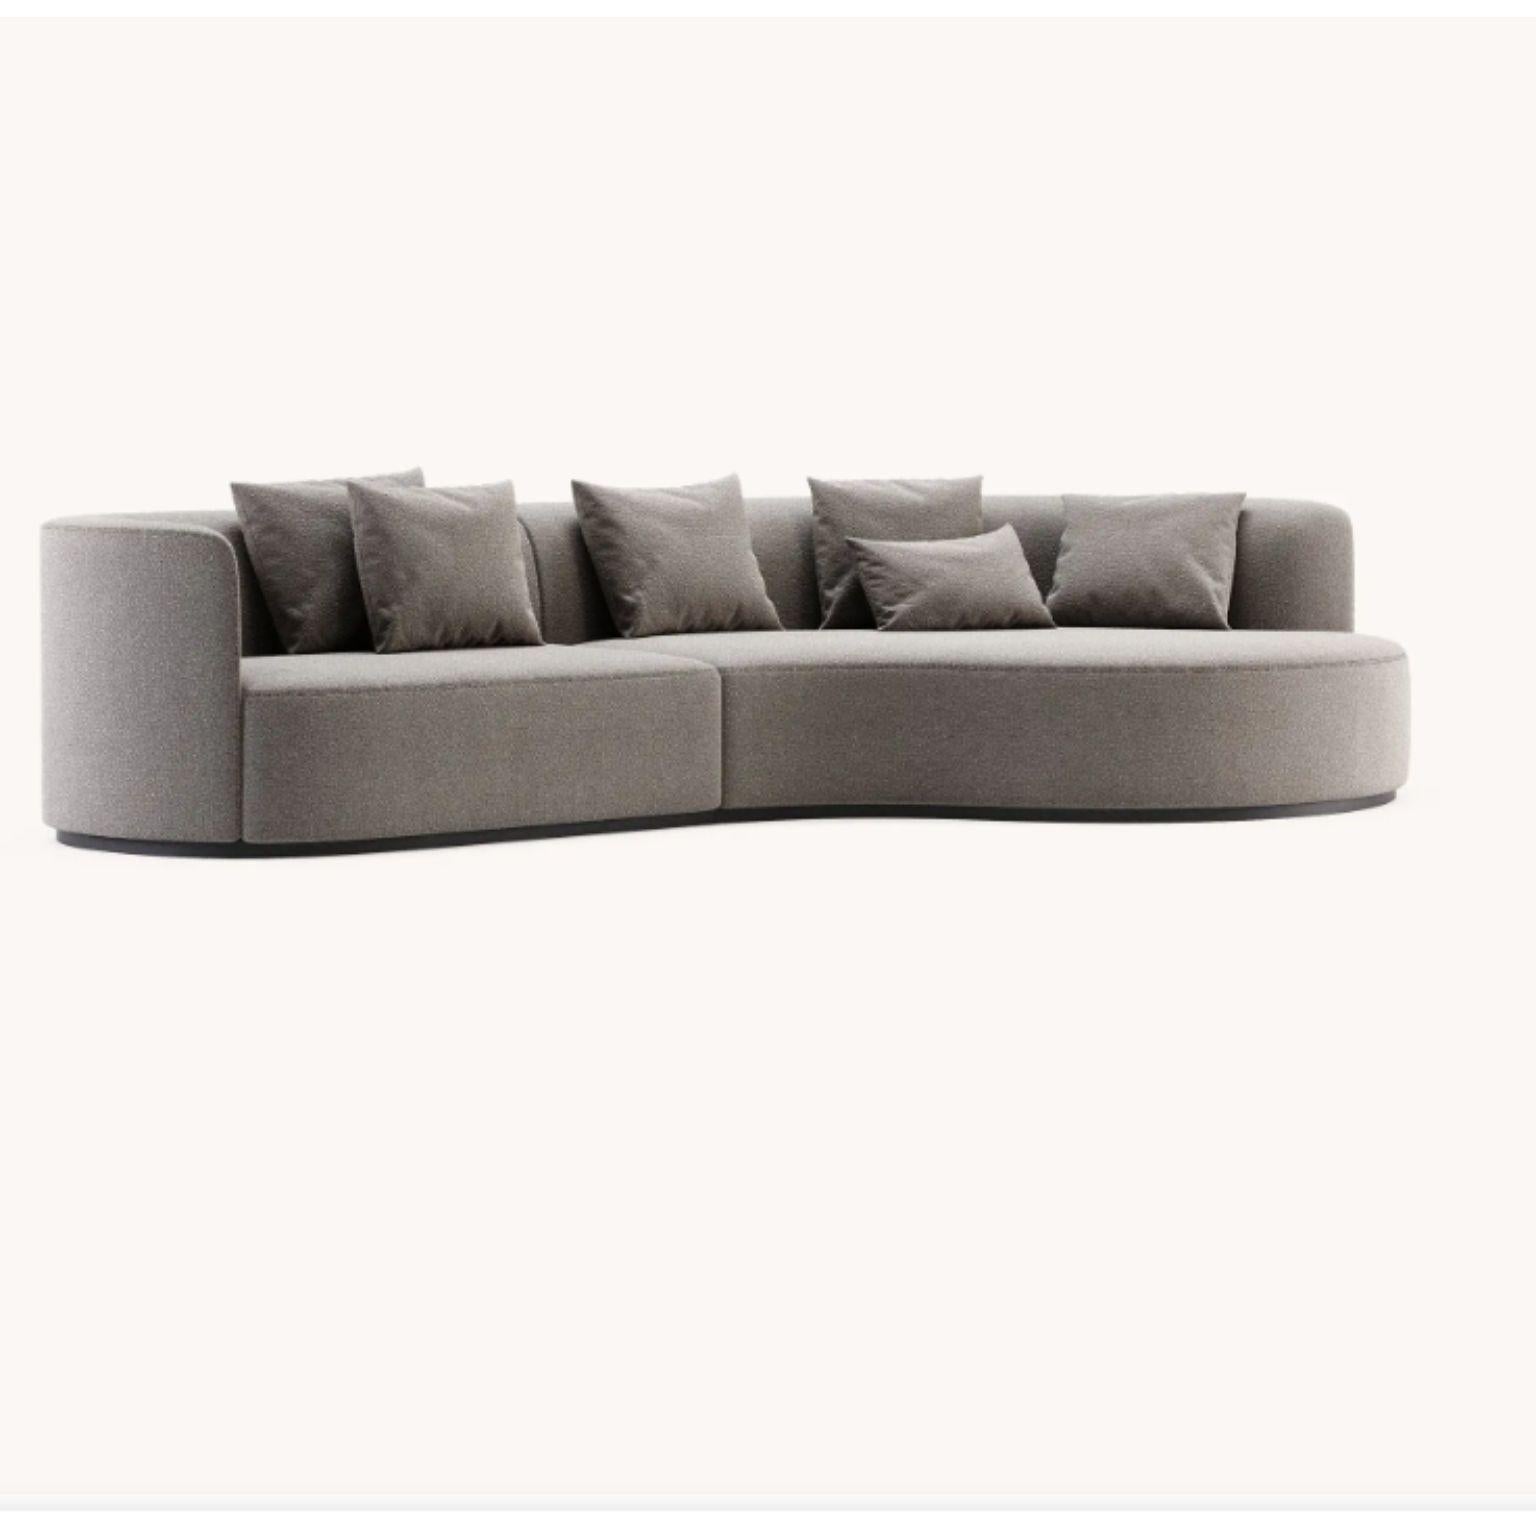 Chaiselonguen-Sofa von Domkapa
MATERIALIEN: Bouclé (Columbia Taupe), schwarze Esche. 
Abmessungen:  B 350 x T 180 x H 75,5 cm.
Auch in verschiedenen MATERIALEN erhältlich. Bitte kontaktieren Sie uns.

Chloe ist ein herausragendes Designerstück, das